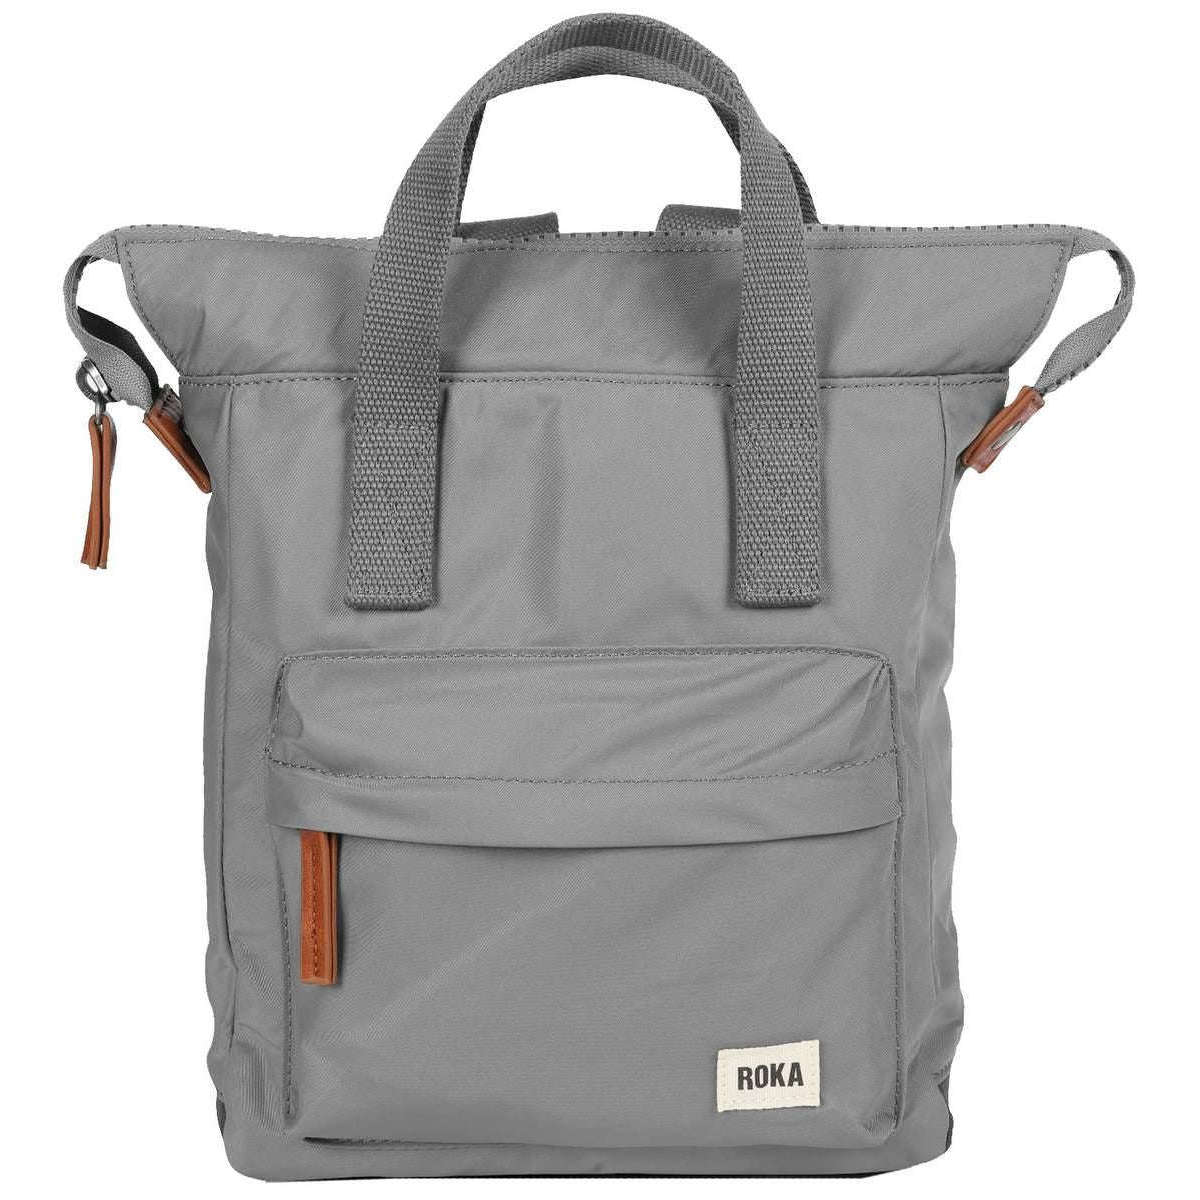 Roka Bantry B Small Sustainable Nylon Backpack - Stormy Grey